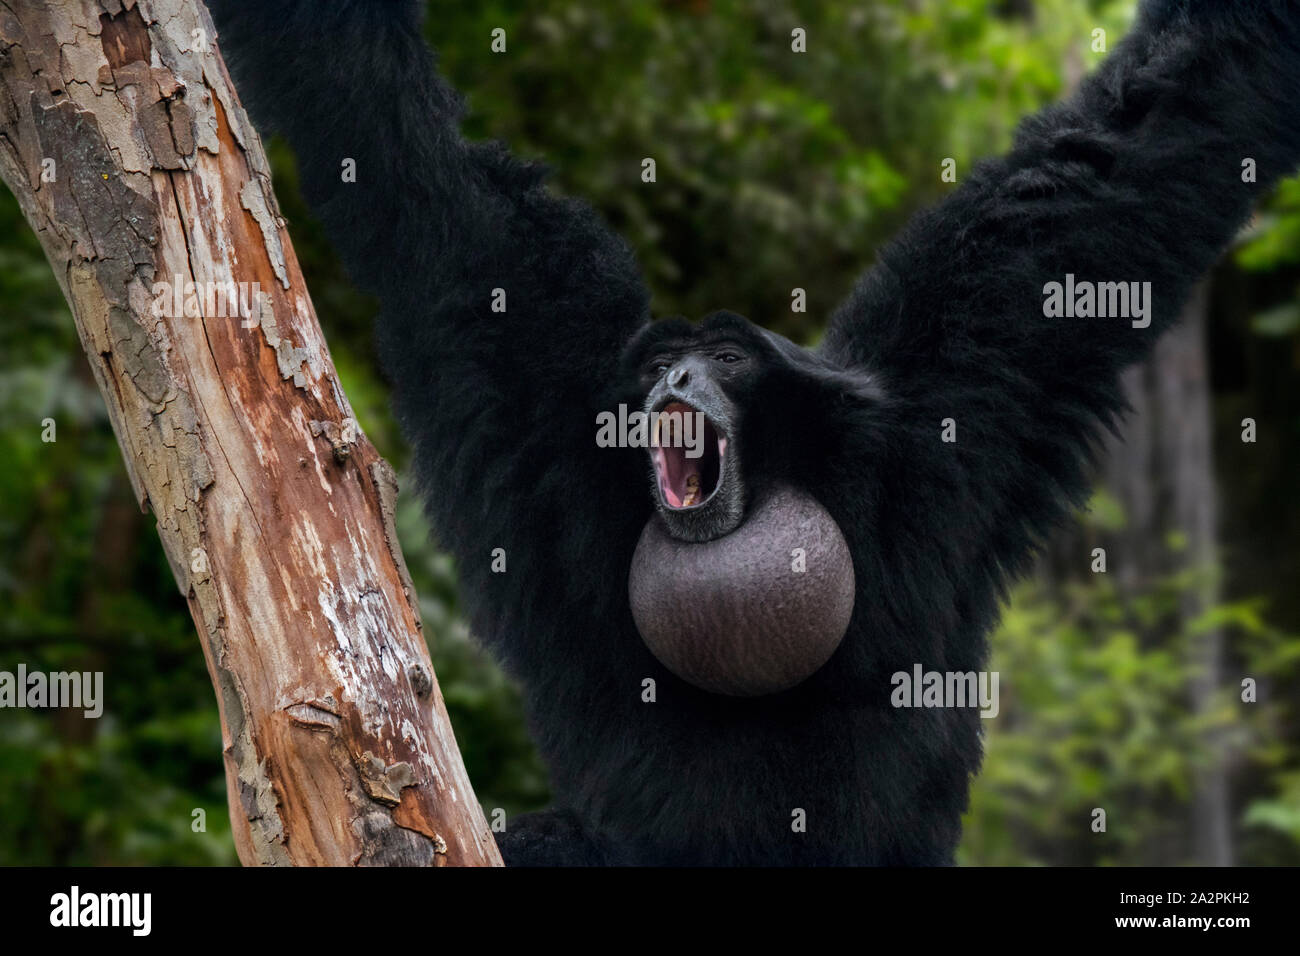 Siamang (Symphalangus syndactylus) Ruft mit Kehle sac aufgeblasen, arboreal schwarz-furred Gibbon in Indonesien, Malaysia und Thailand Stockfoto